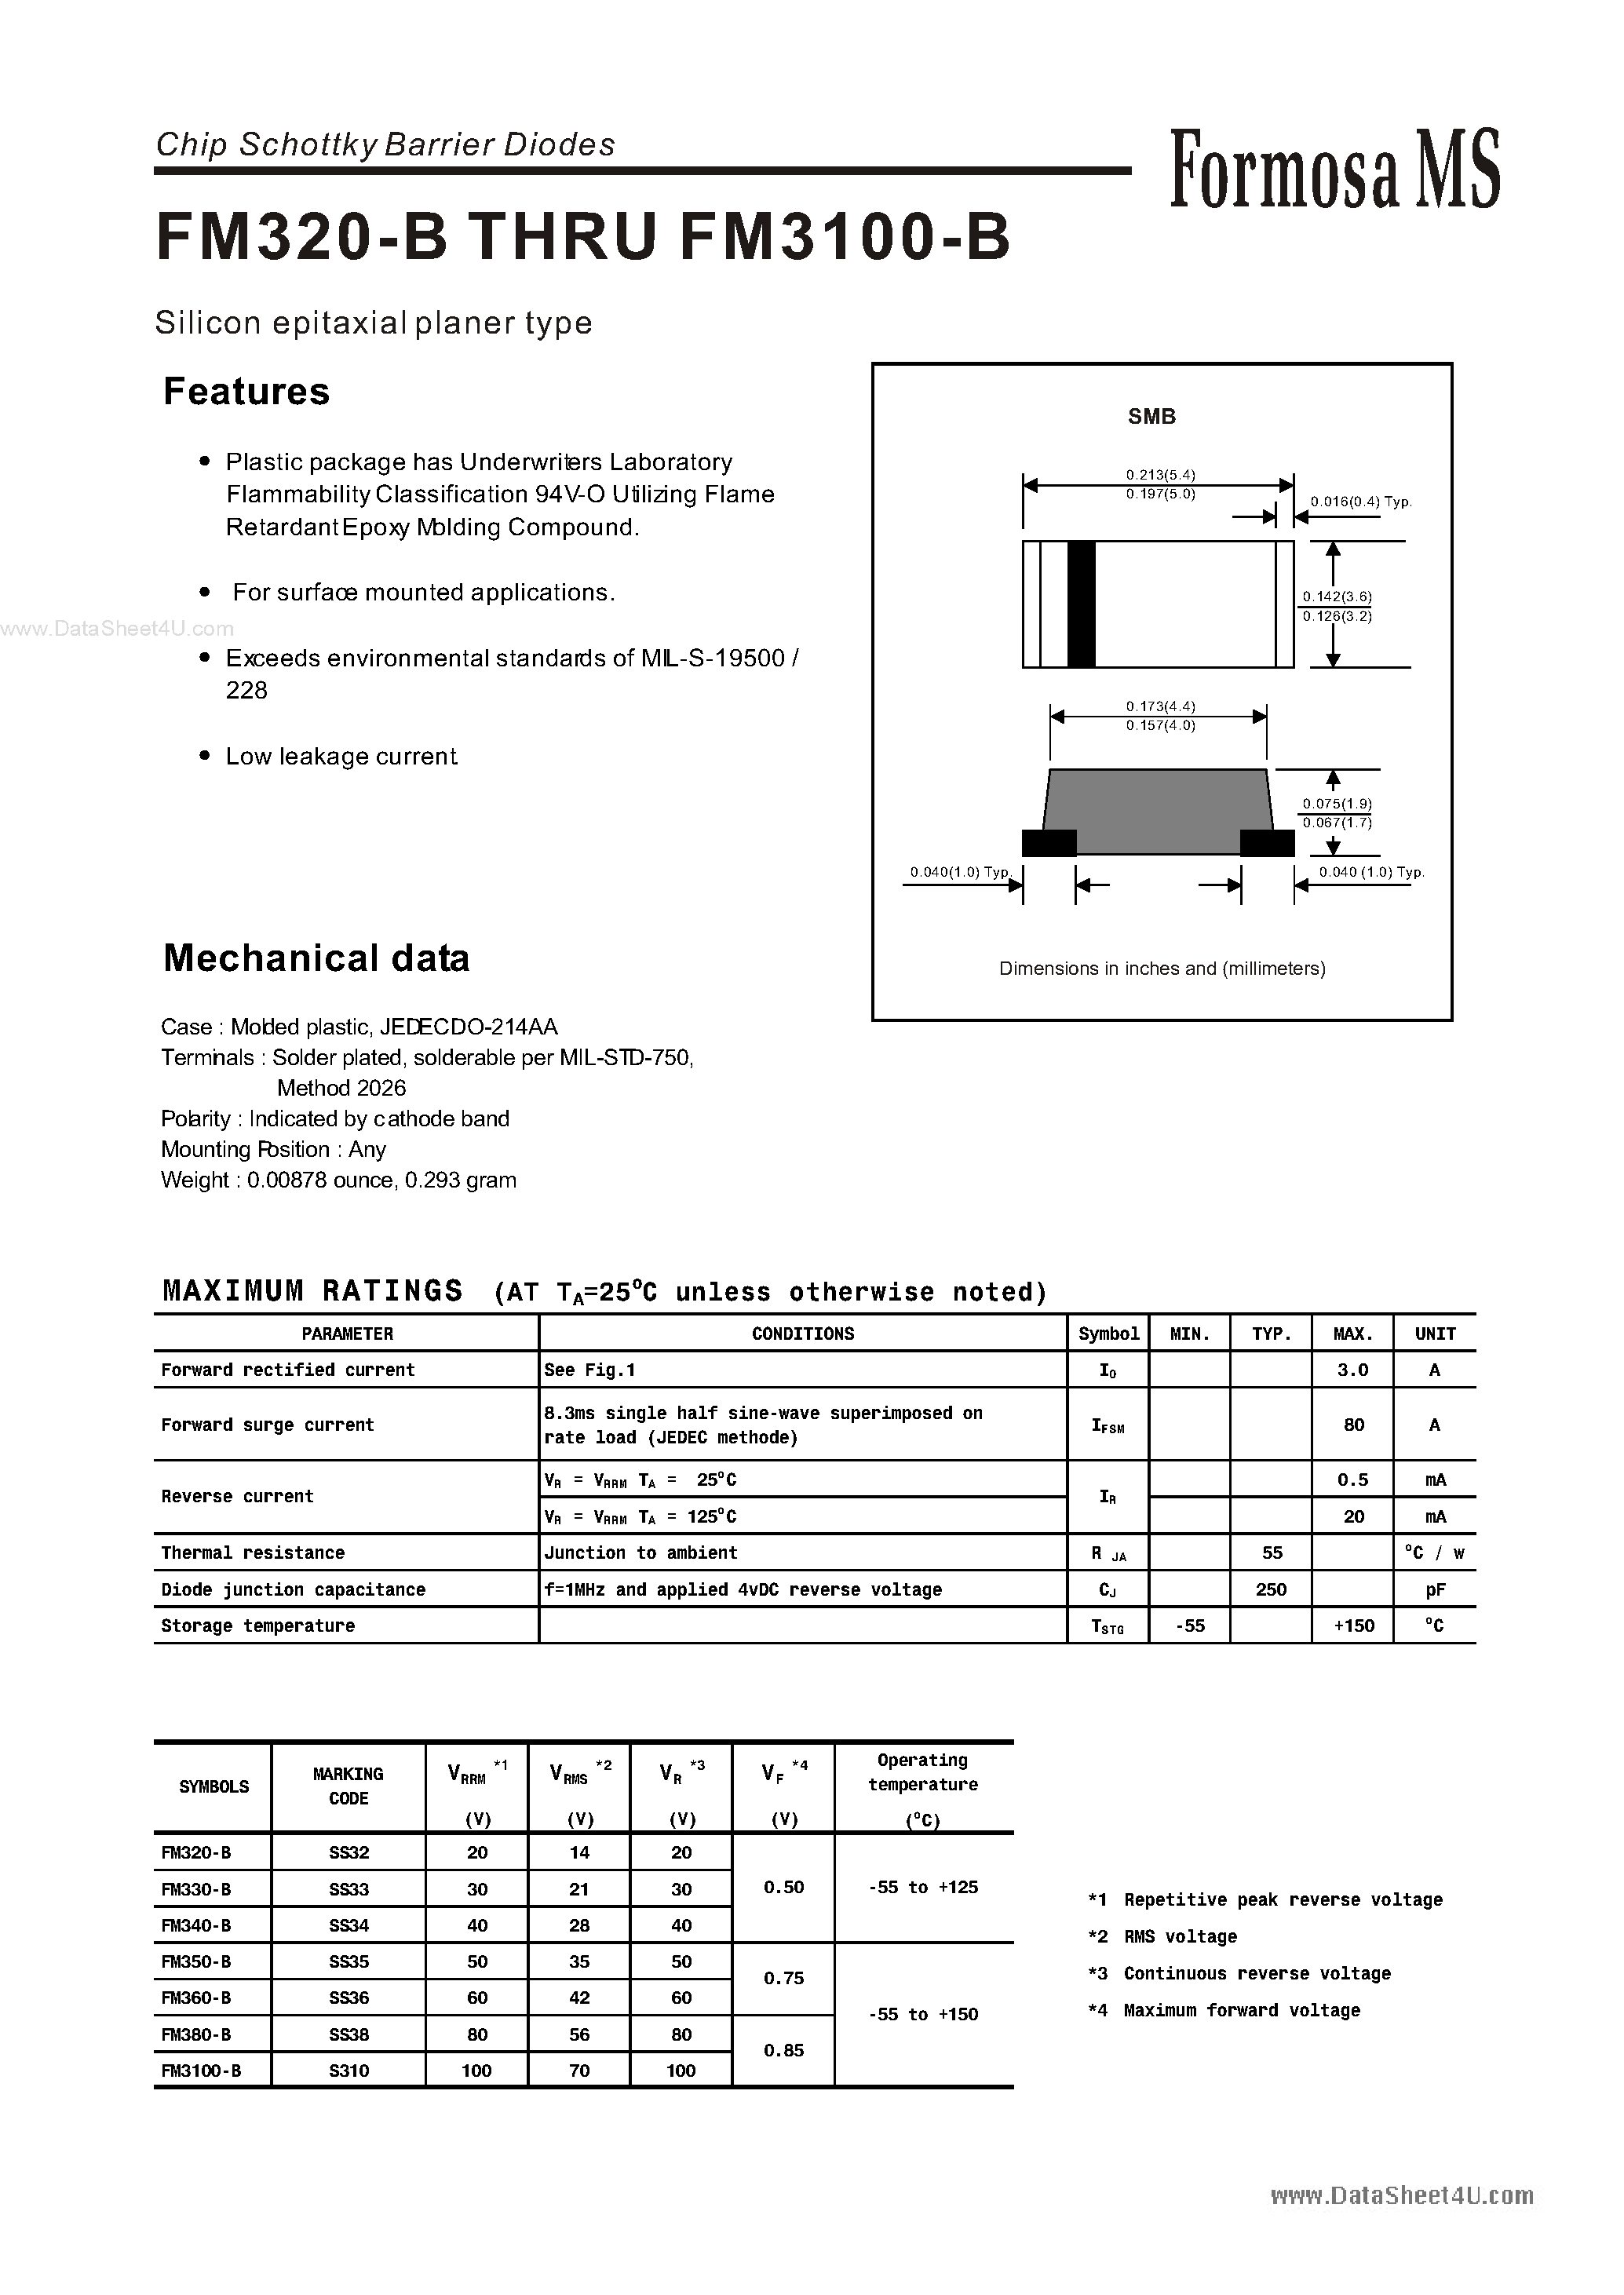 Datasheet FM3100-B - (FM3xxx-B) Chip Schottky Barrier Diodes page 1